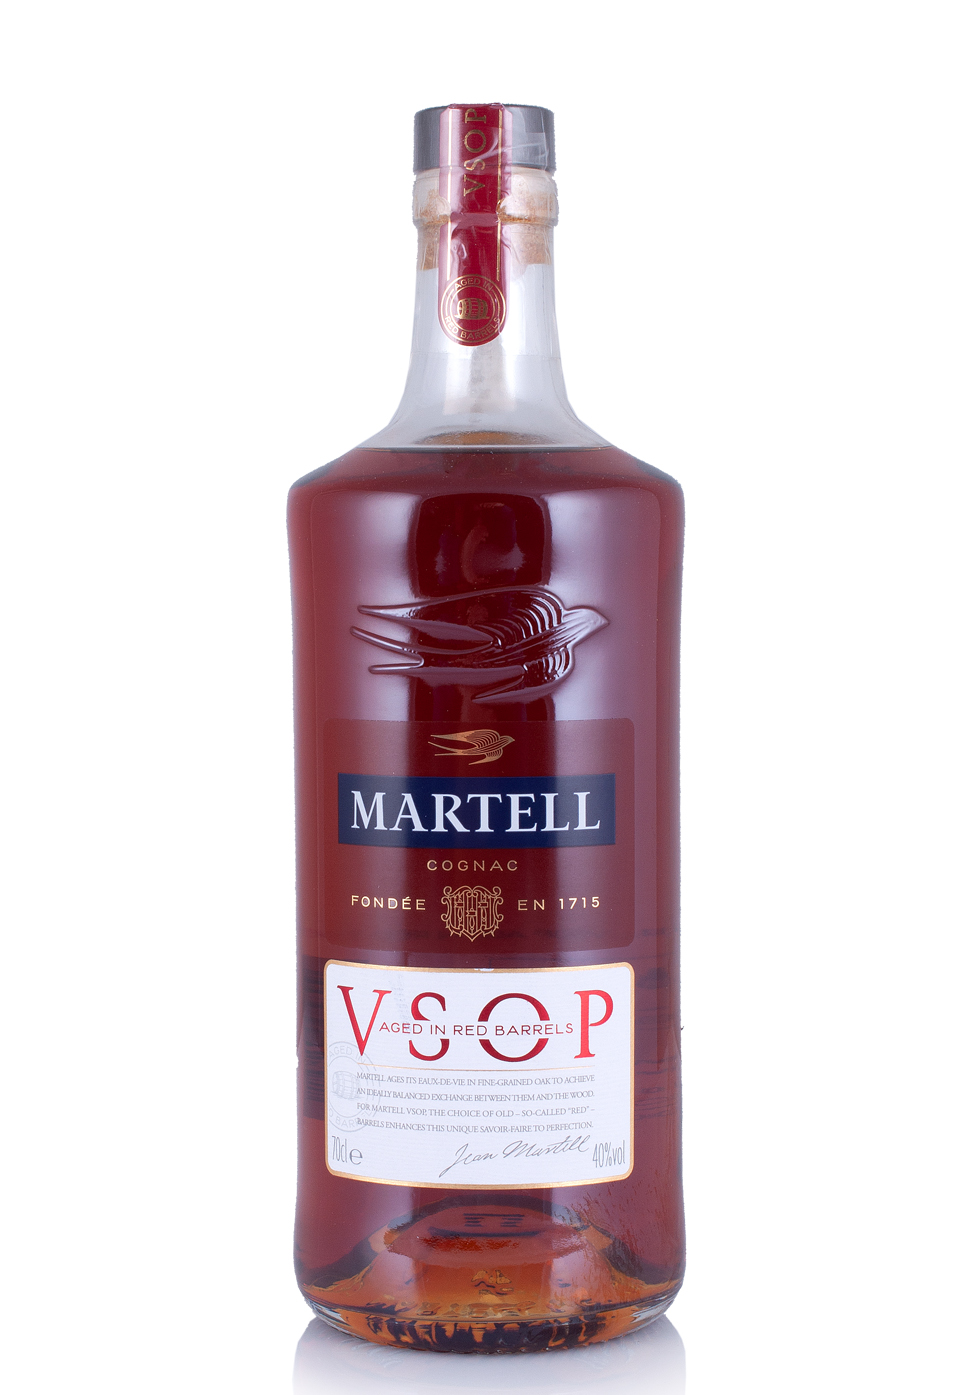 Cognac Martell VSOP Aged in Red Barrels 40% (0.7L)